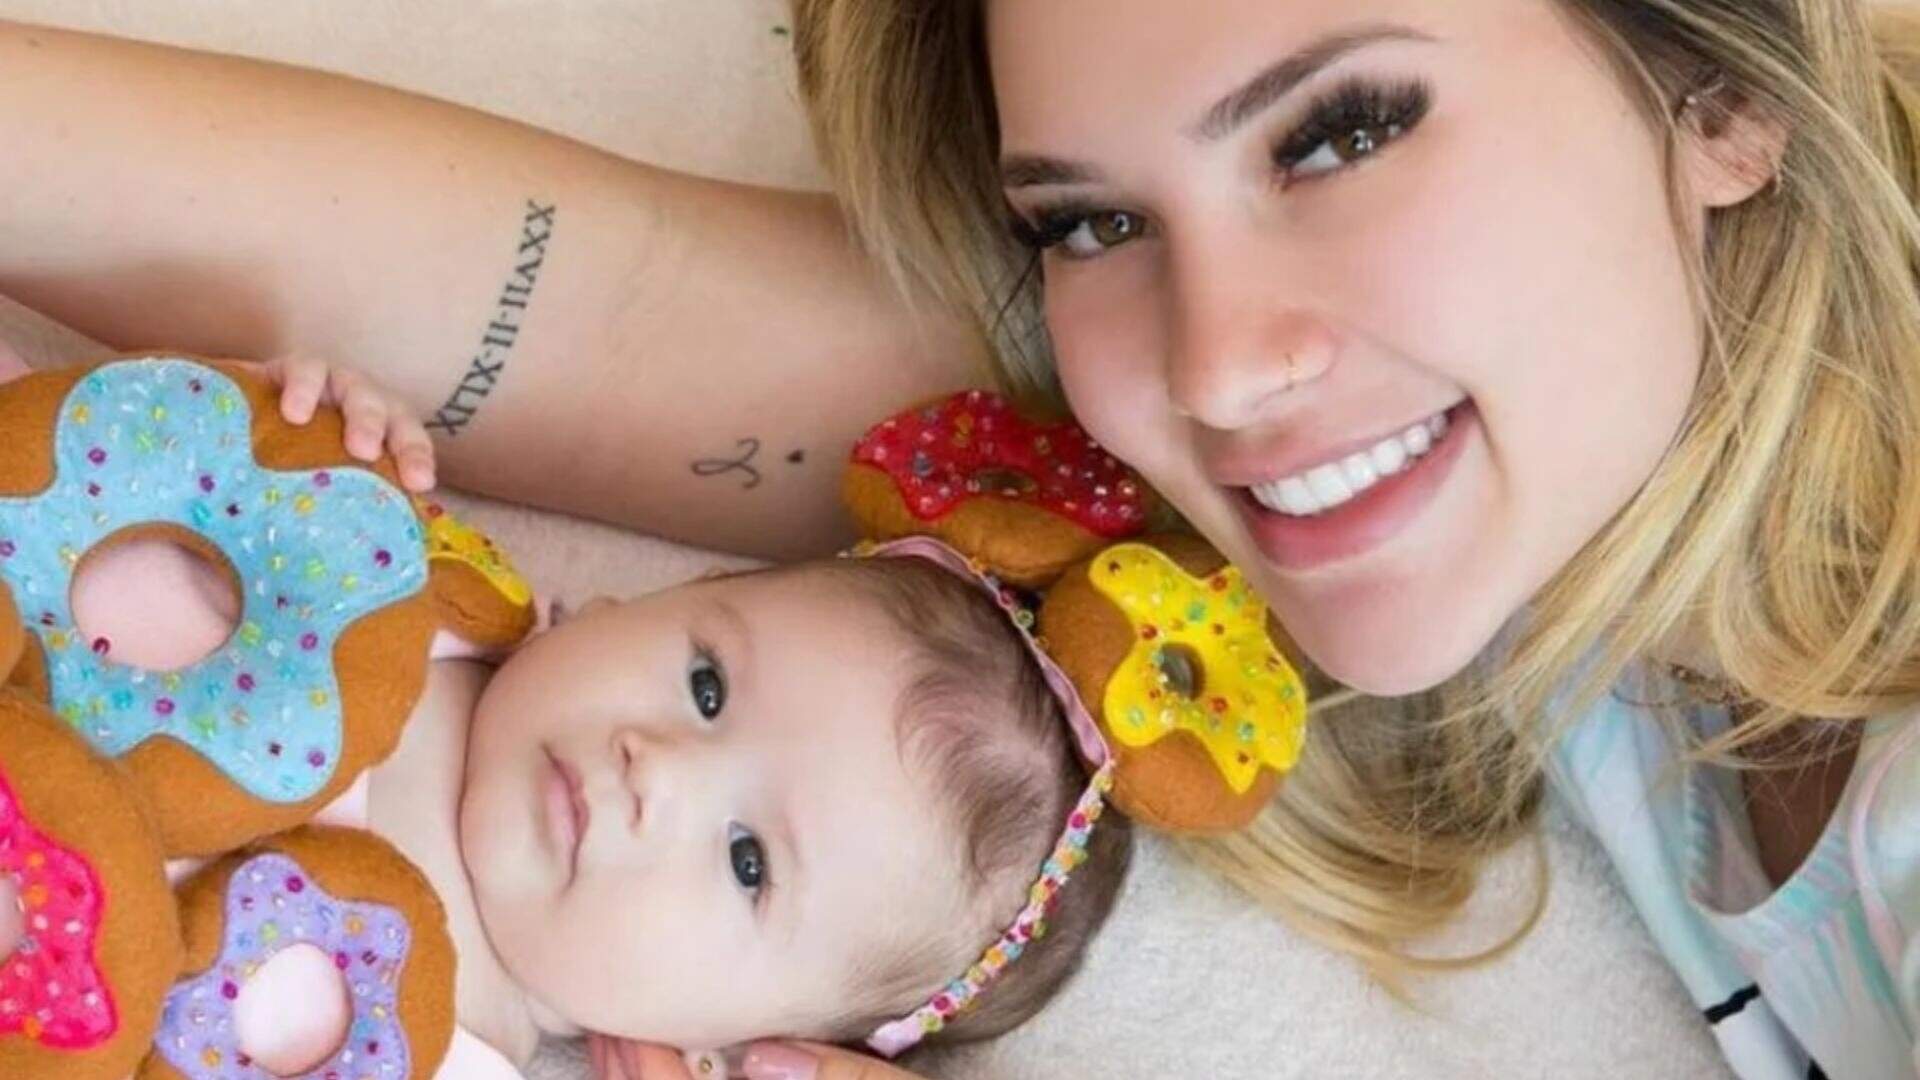 Virgínia Fonseca faz revelação inesperada sobre filha de 1 ano e choca: “Ela faz ânsia” - Metropolitana FM